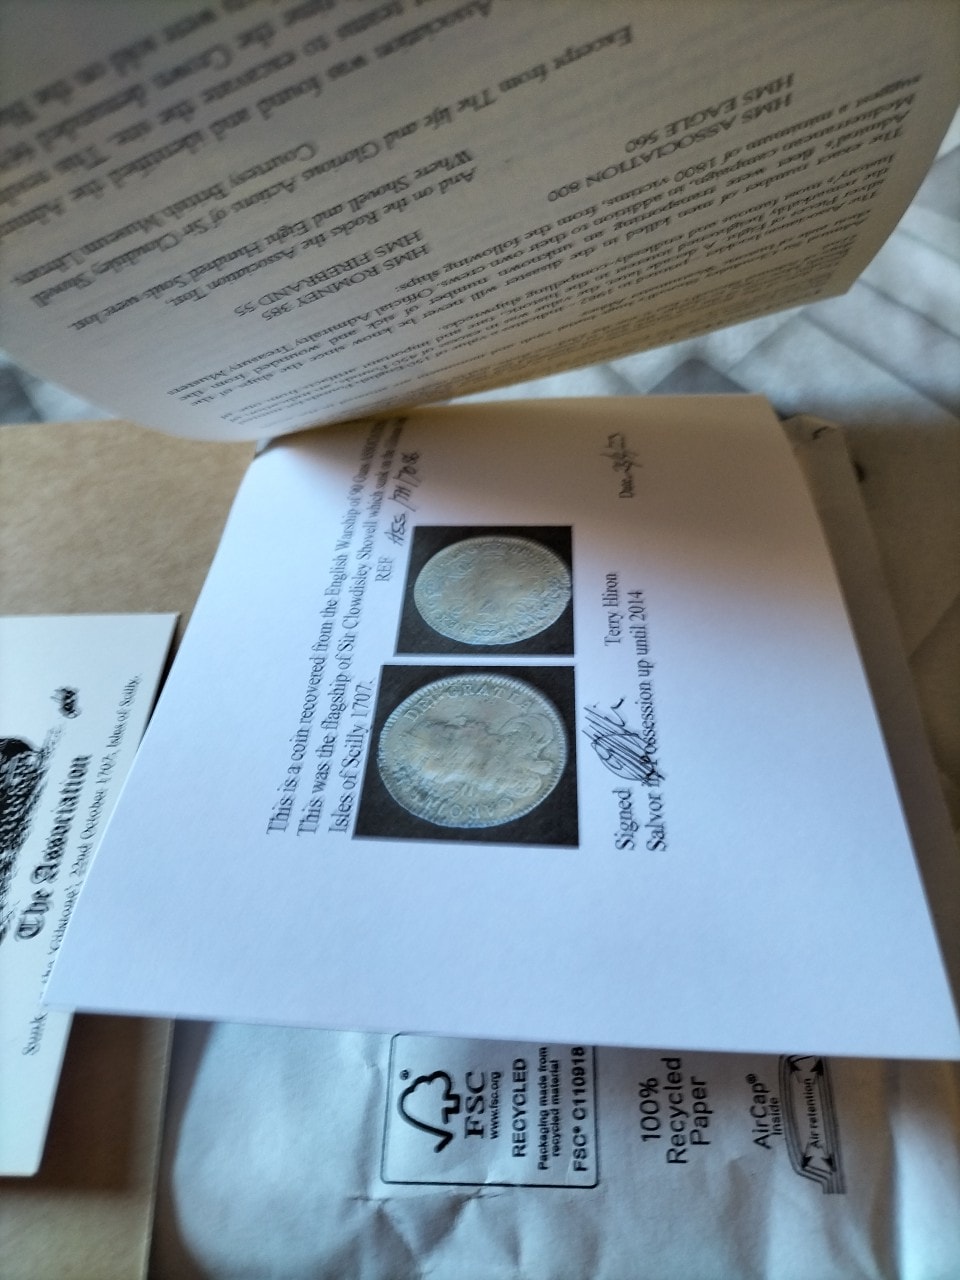 Monedas procedentes de pecios famosos - Página 5 Cronw410